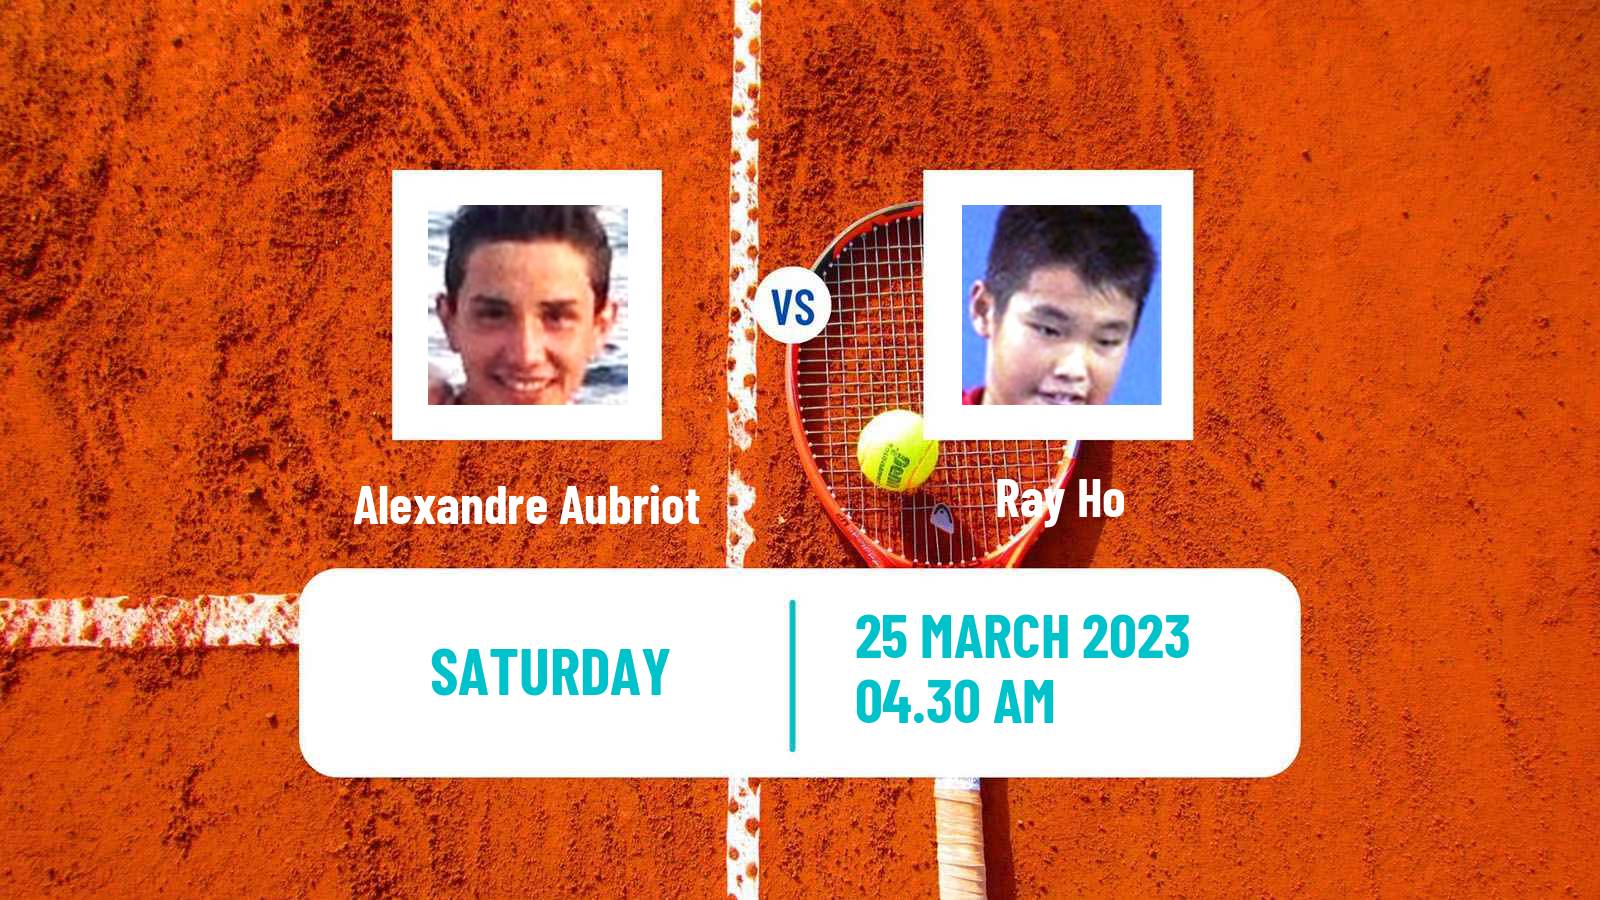 Tennis ITF Tournaments Alexandre Aubriot - Ray Ho